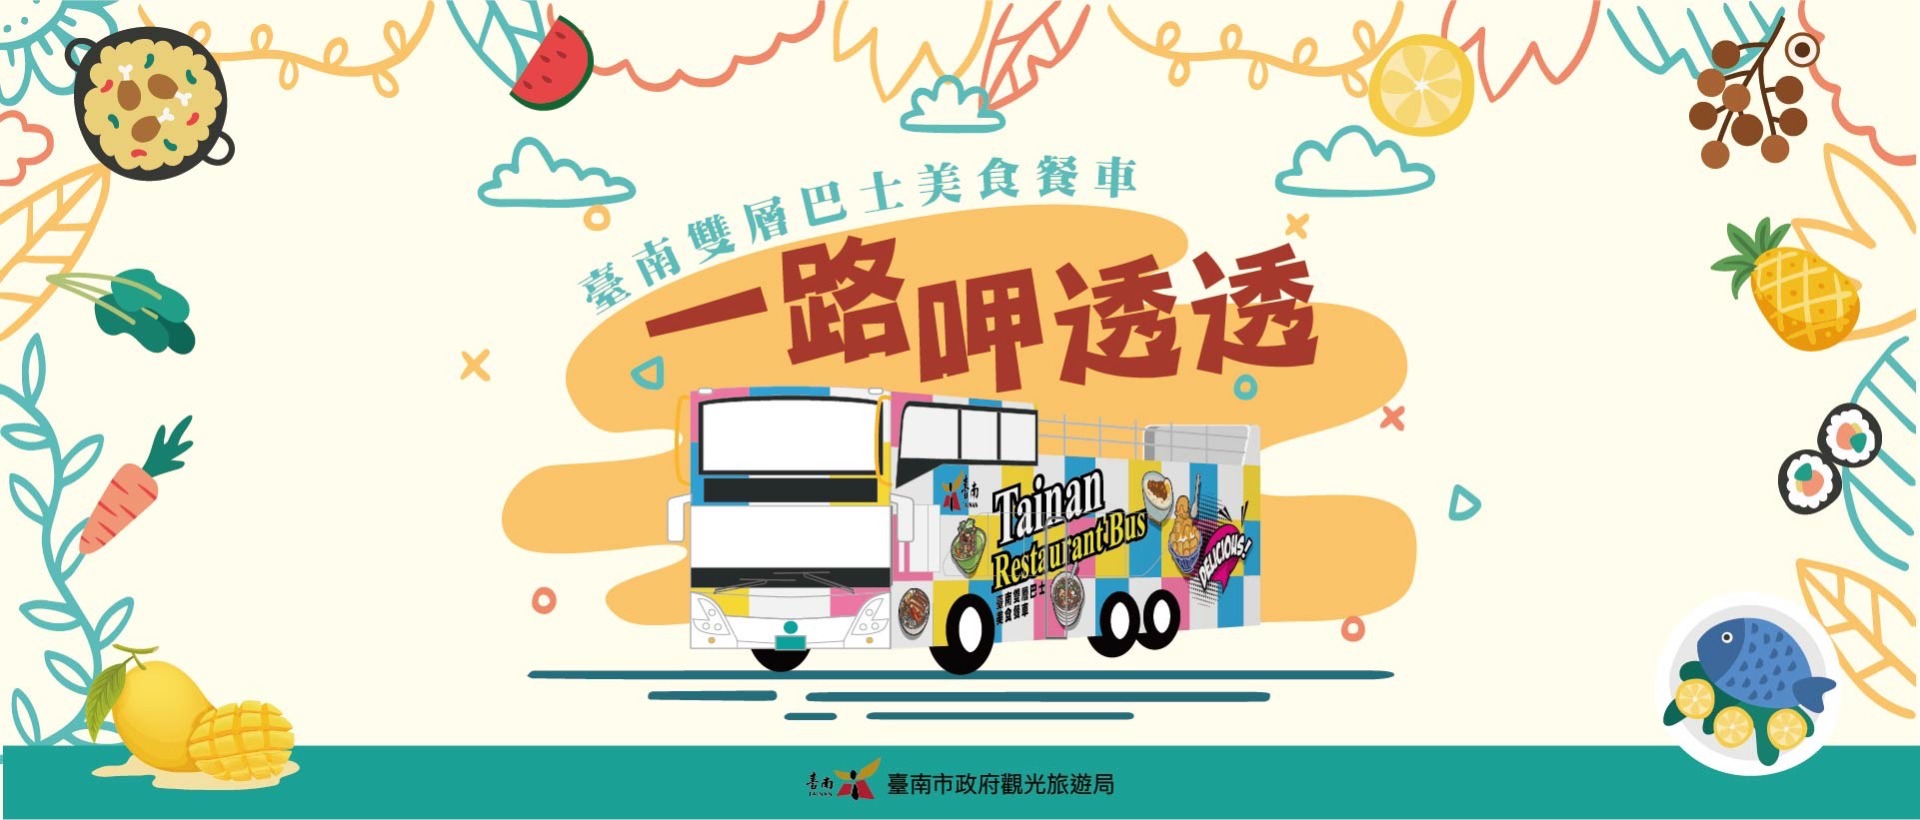 臺南市雙層巴士美食餐車系列體驗活動